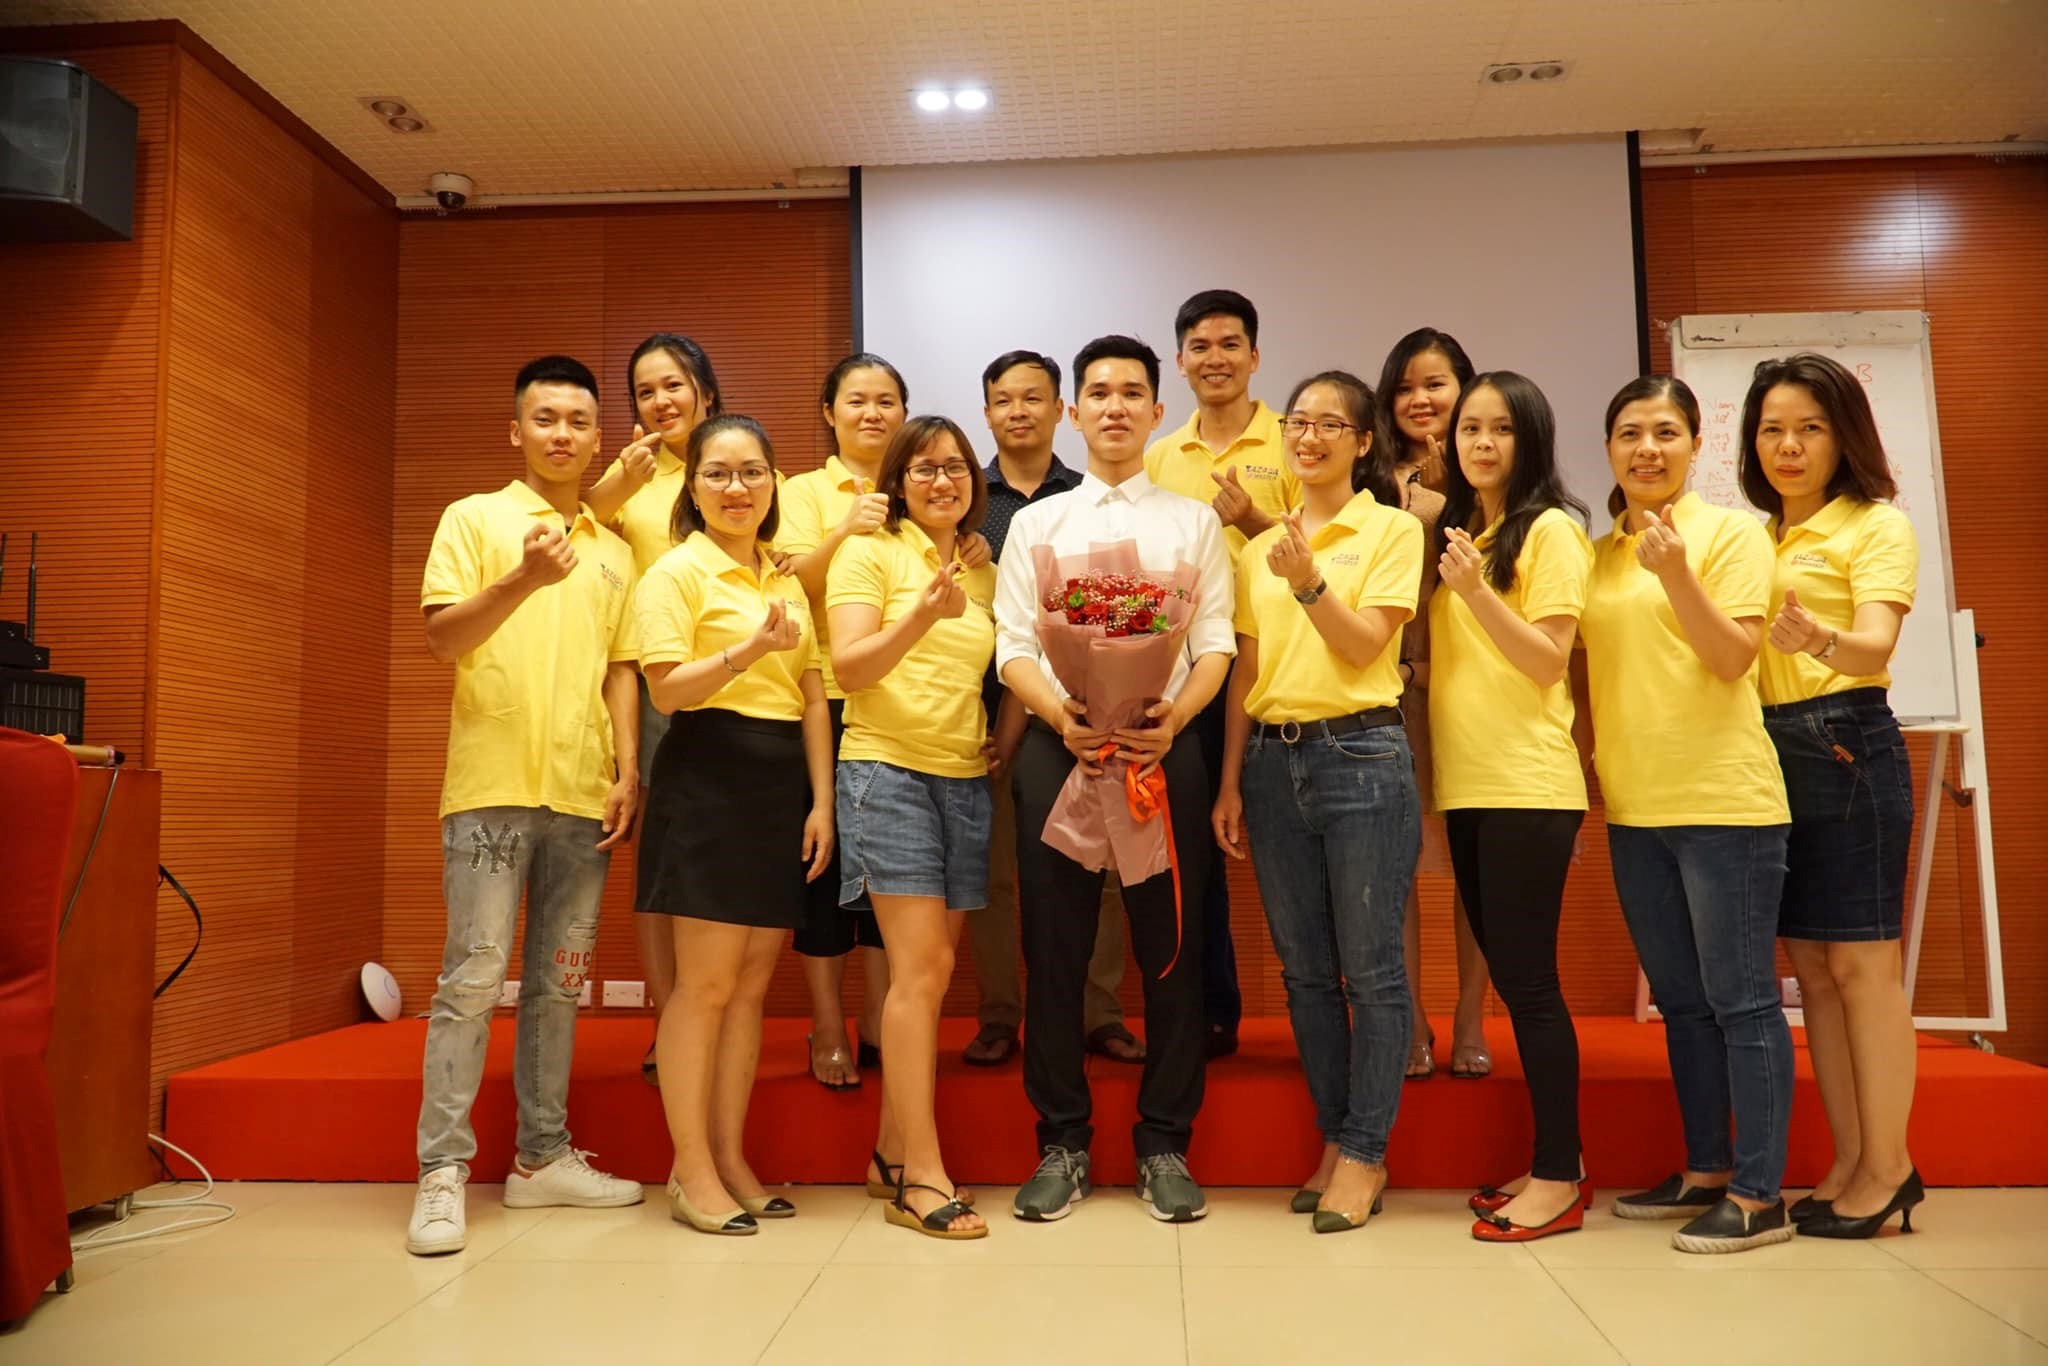 CEO Nguyễn Hiếu Liêm –Hành trình trở thành nhà đào tạo bán hàng online nhiệt huyết